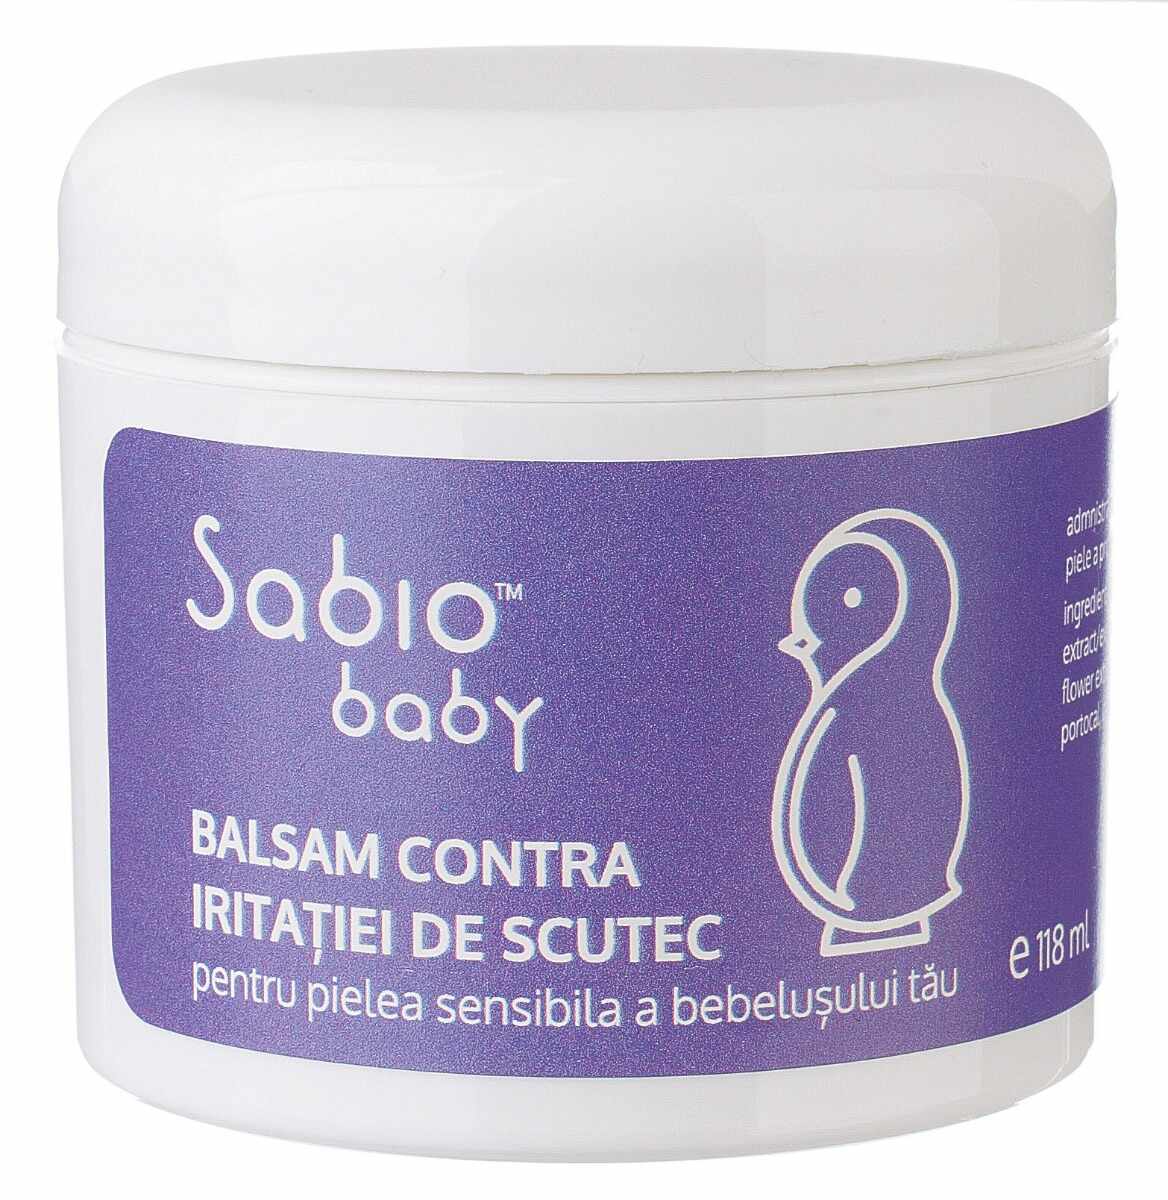 Balsam contra iritatiei de scutec, 118ml, Sabio